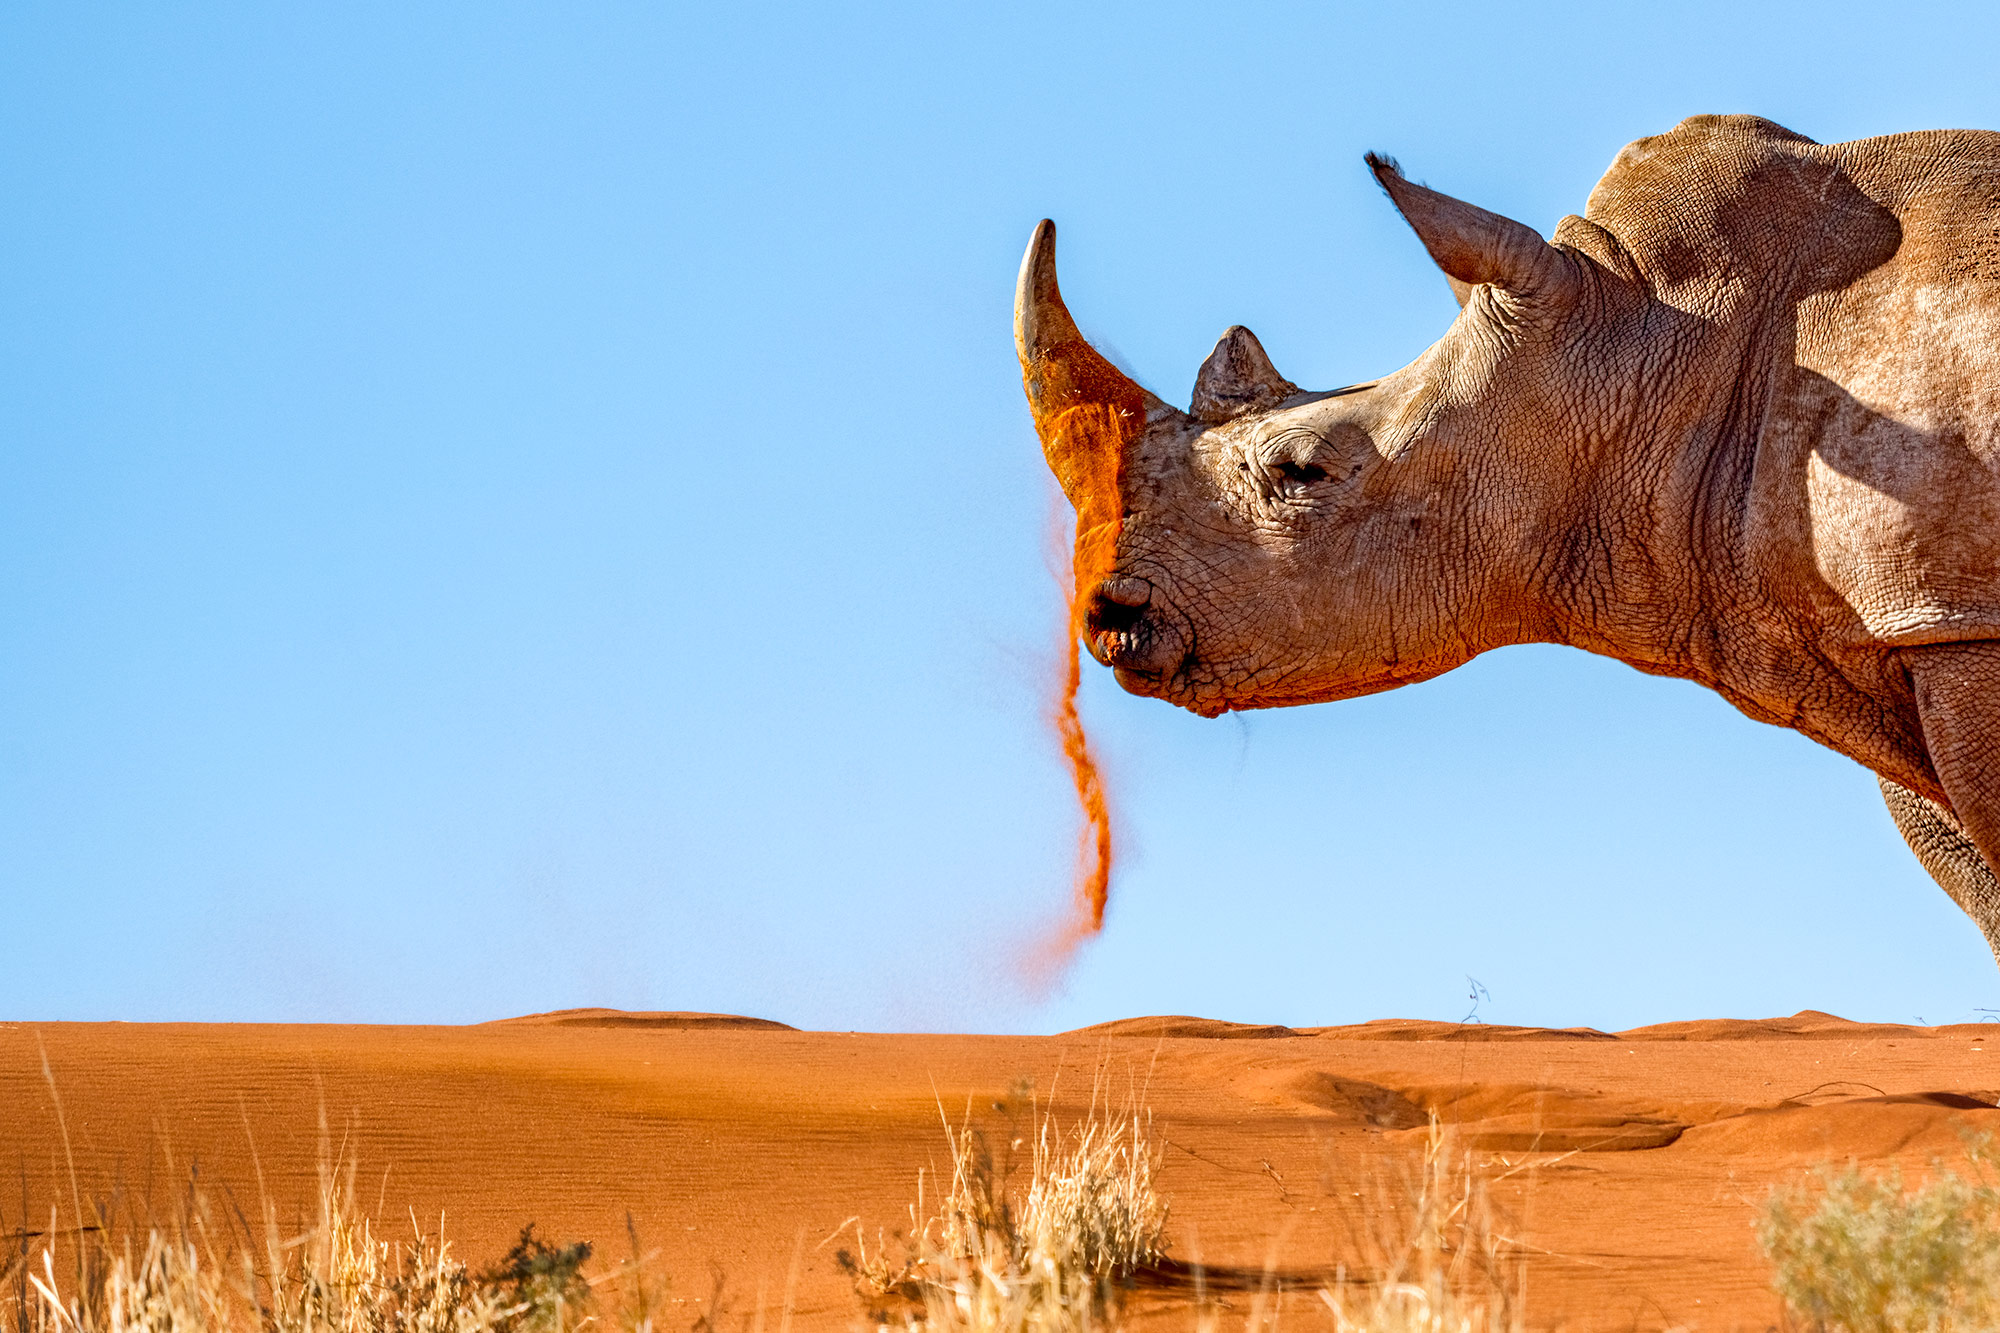 Nashorn mit Sand auf seinem Horn. Fotografiert von Benny Rebel auf einer Fotoreise durch Namibia.